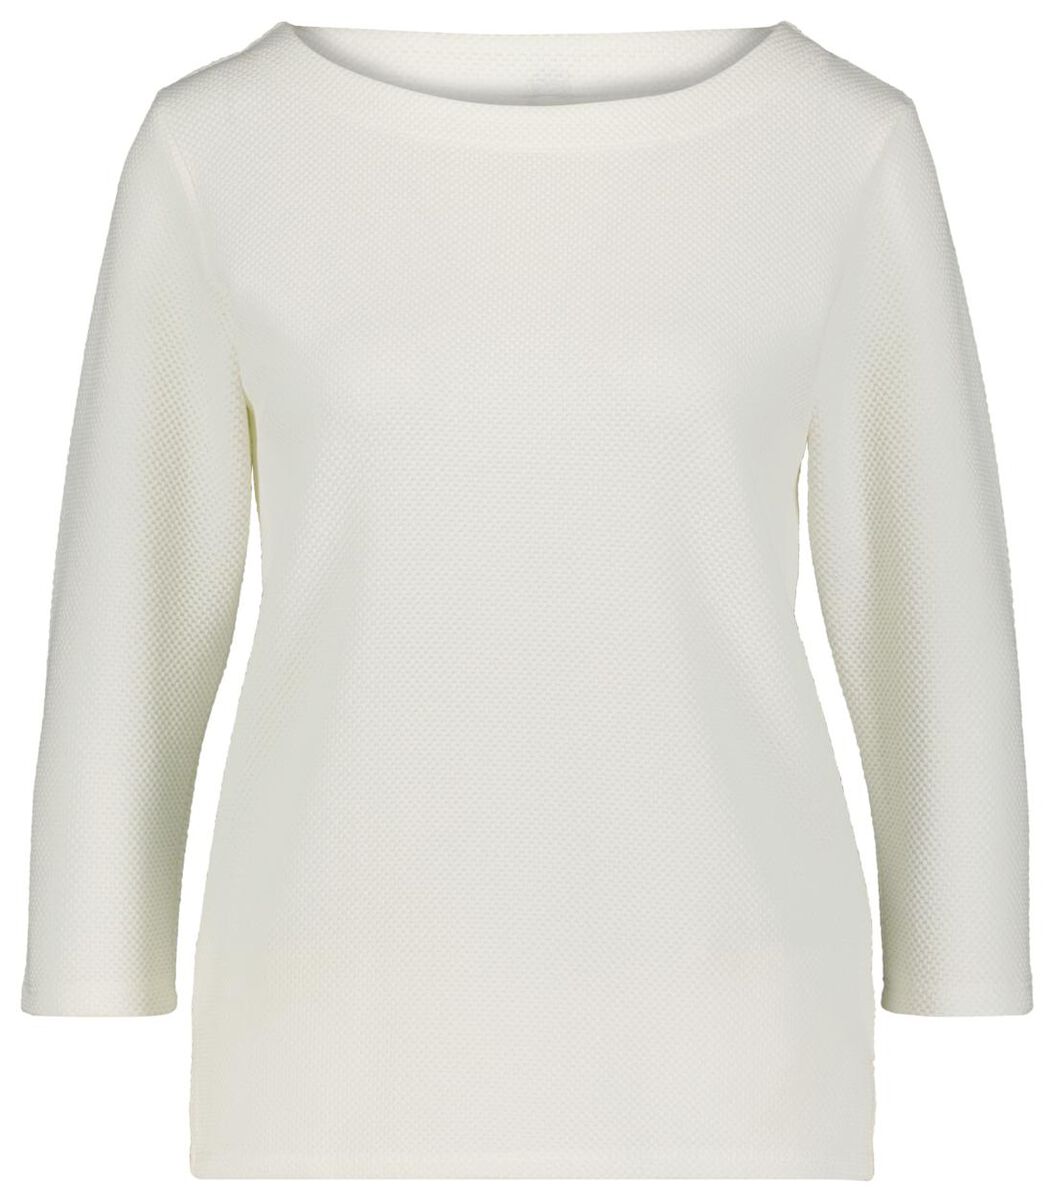 Damen-Shirt, Struktur eierschalenfarben eierschalenfarben - 1000021242 - HEMA